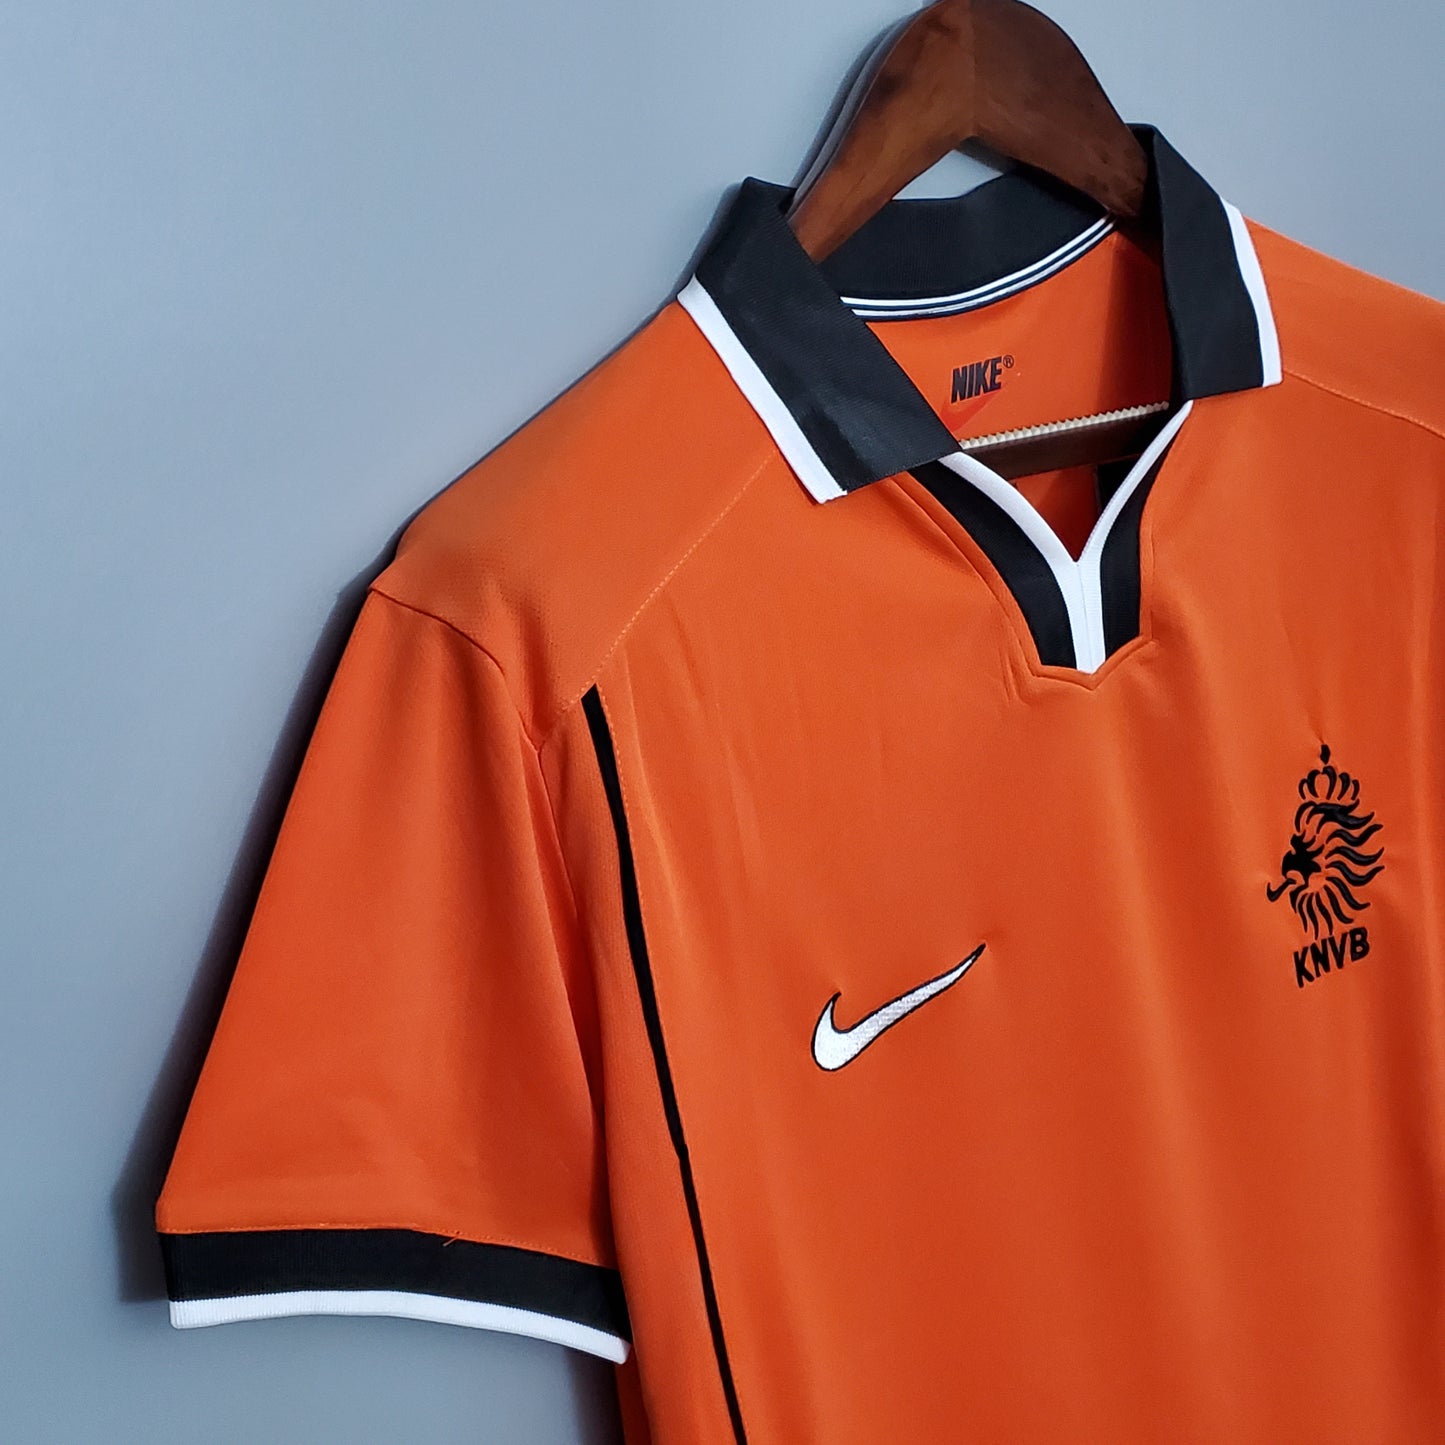 Netherlands 1998 Home Shirt